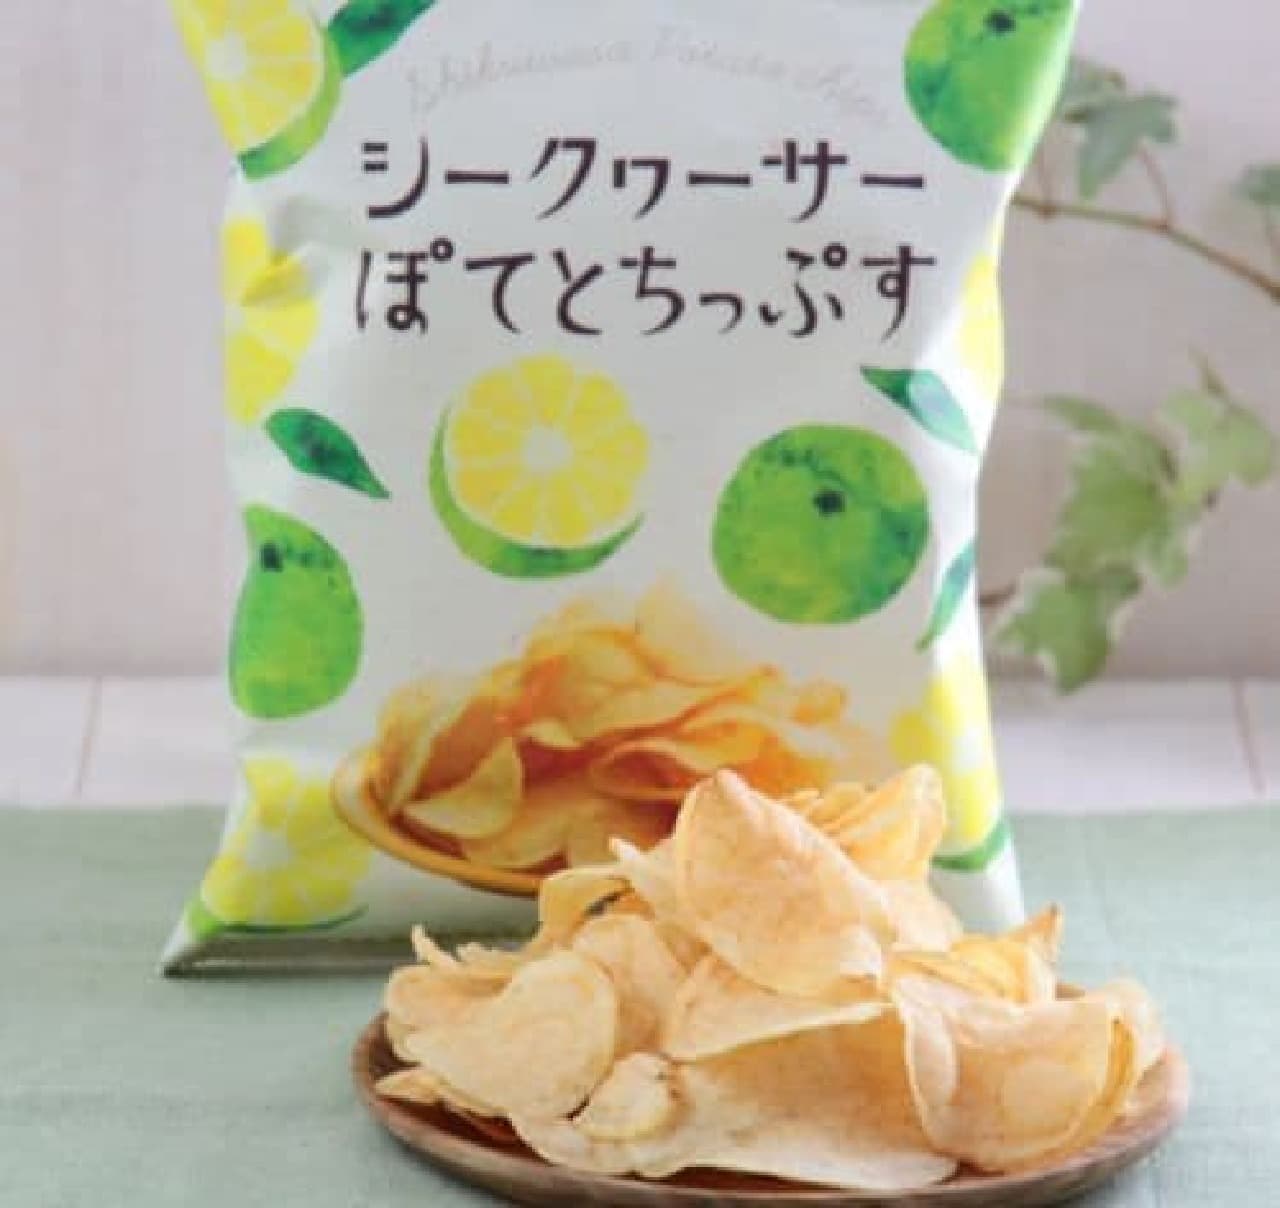 「オリジナル シークヮーサーぽてとちっぷす」は、沖縄県産の“シークヮーサー”の味わいに合うようアレンジされたポテトチップス